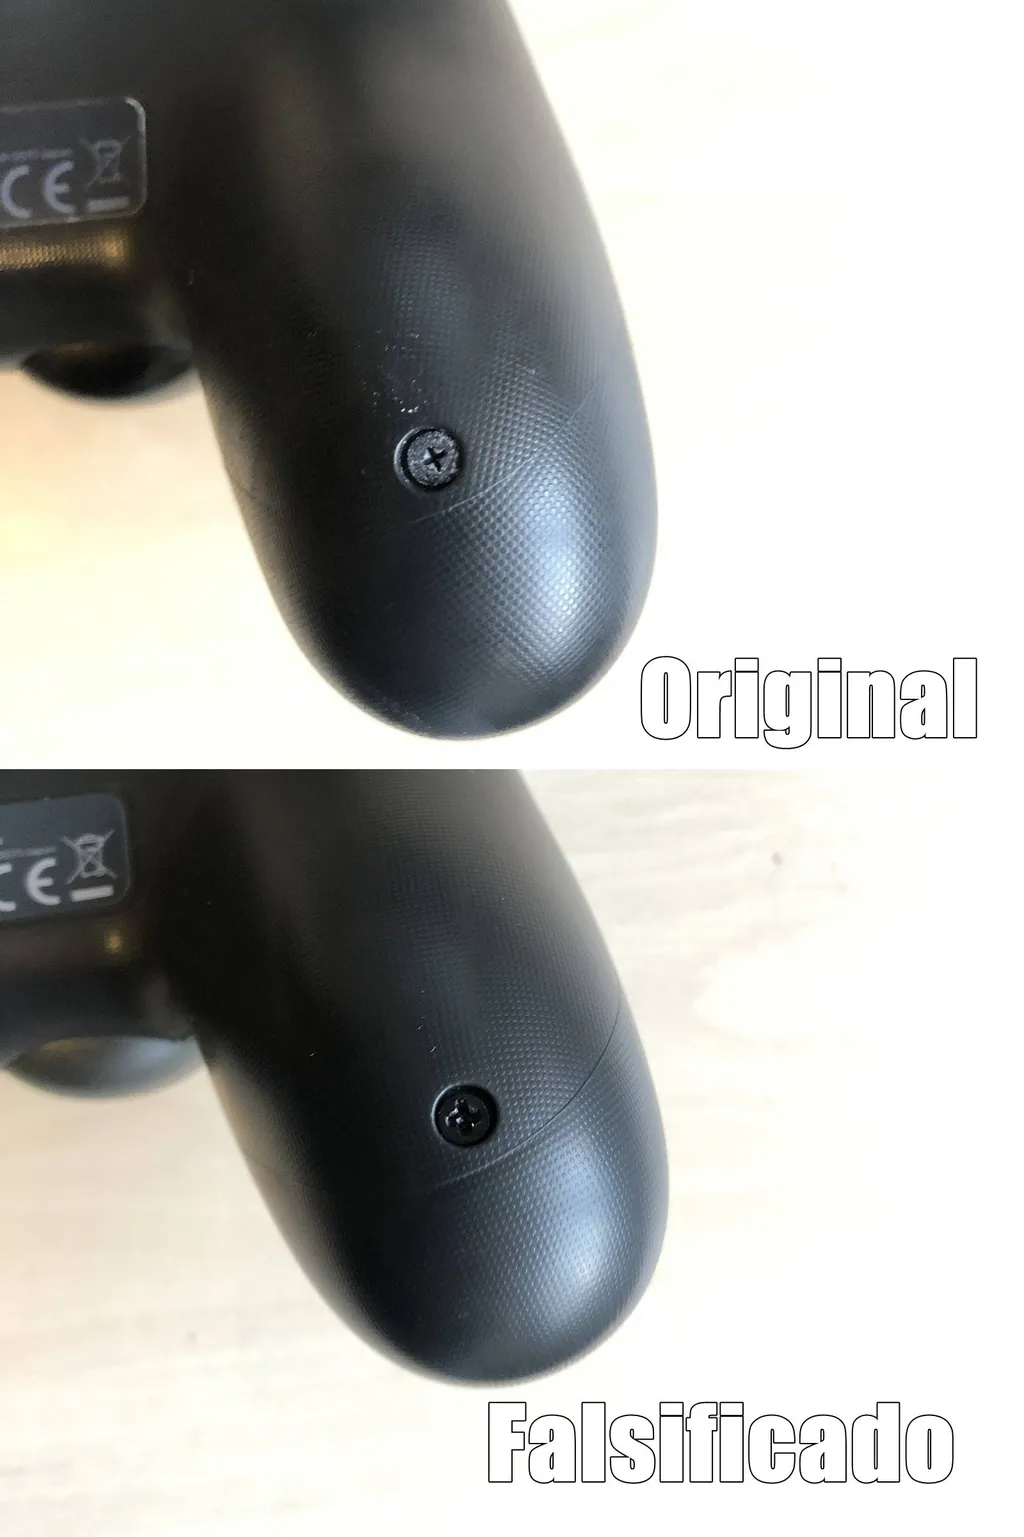 Como saber se um controle do PS4 é original